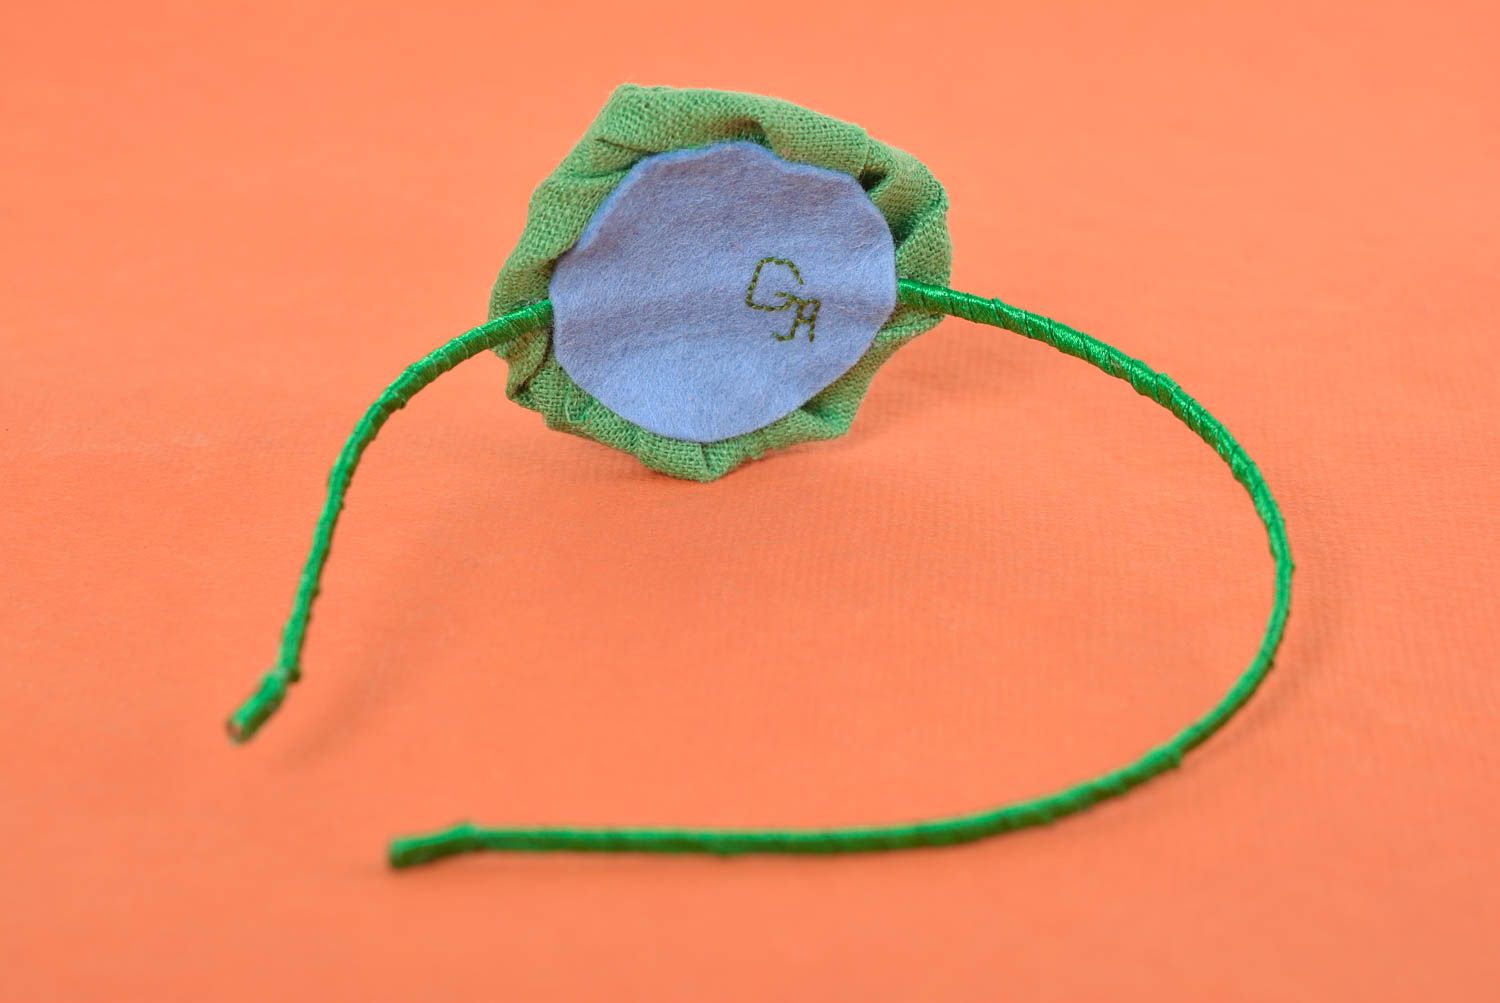 Аксессуар для волос handmade обруч на голову женский аксессуар с зеленым цветком фото 5